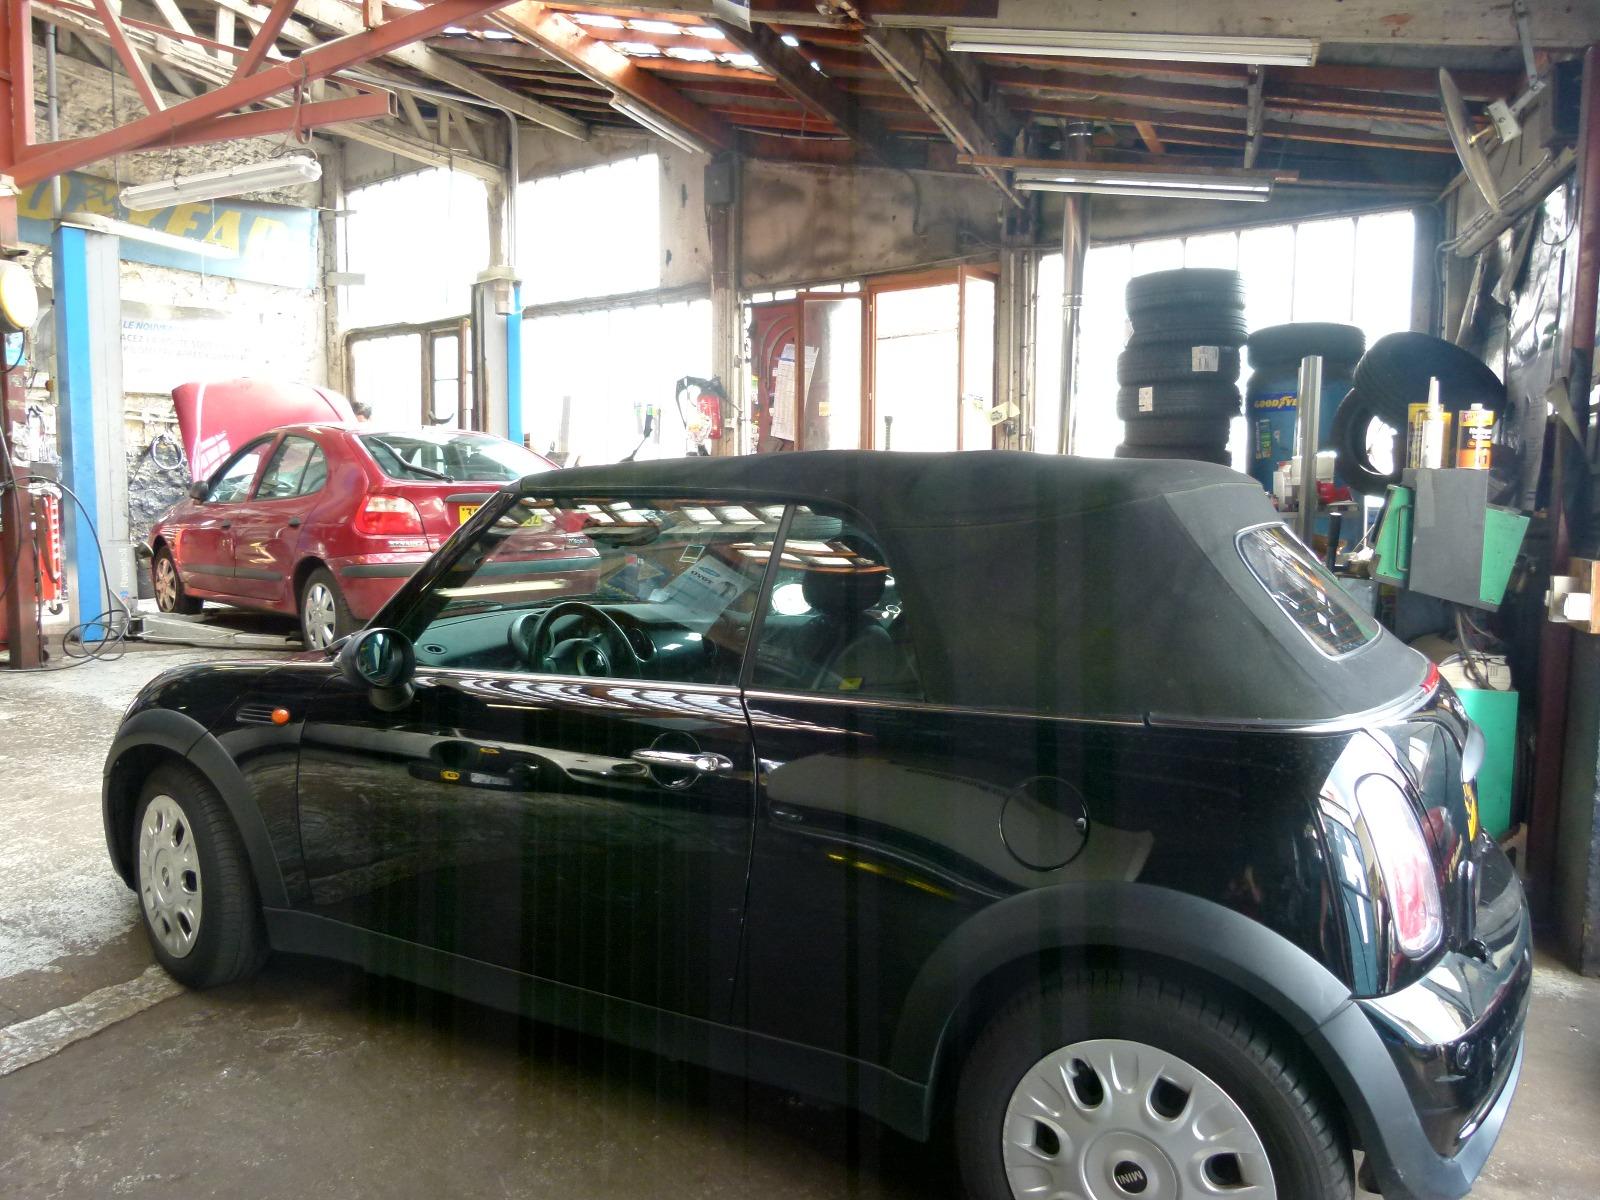 Réparation tous véhicules - Garage Barros - Chaville